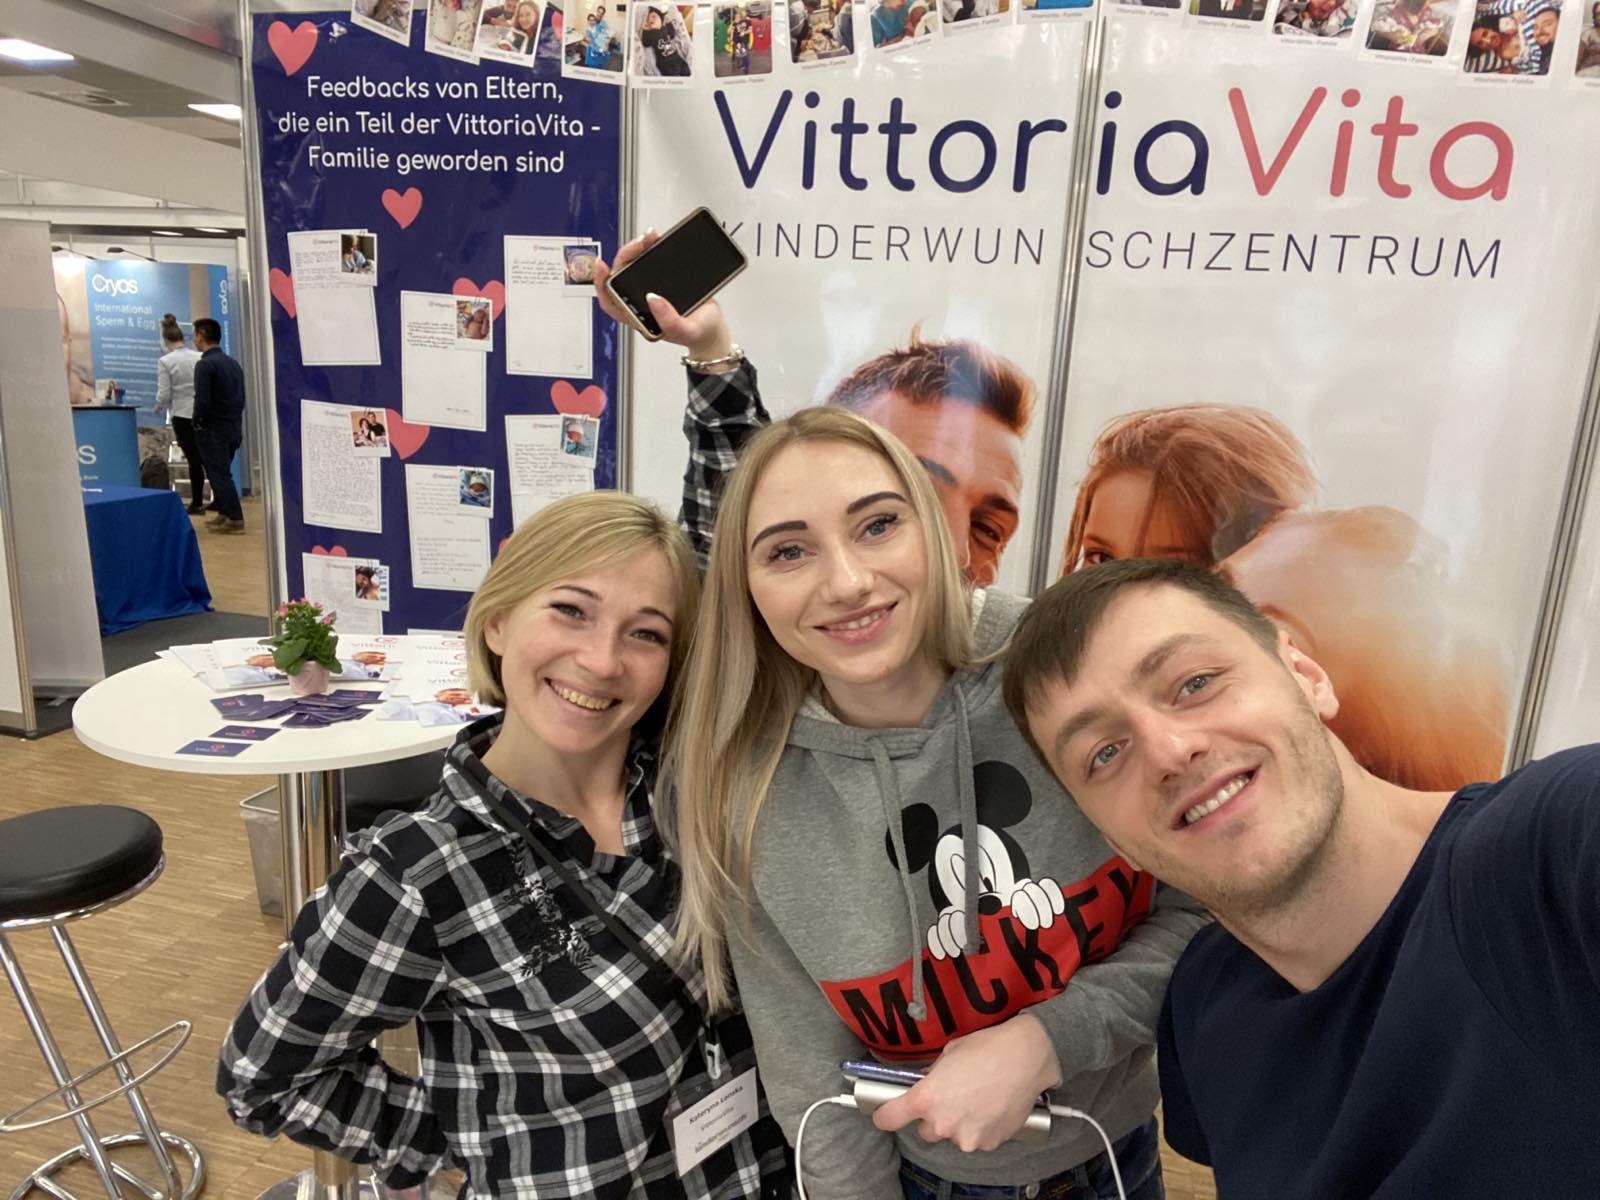 Mitarbeiter VittoriaVita bei Kinderwunsch-Tage in Berlin 2020